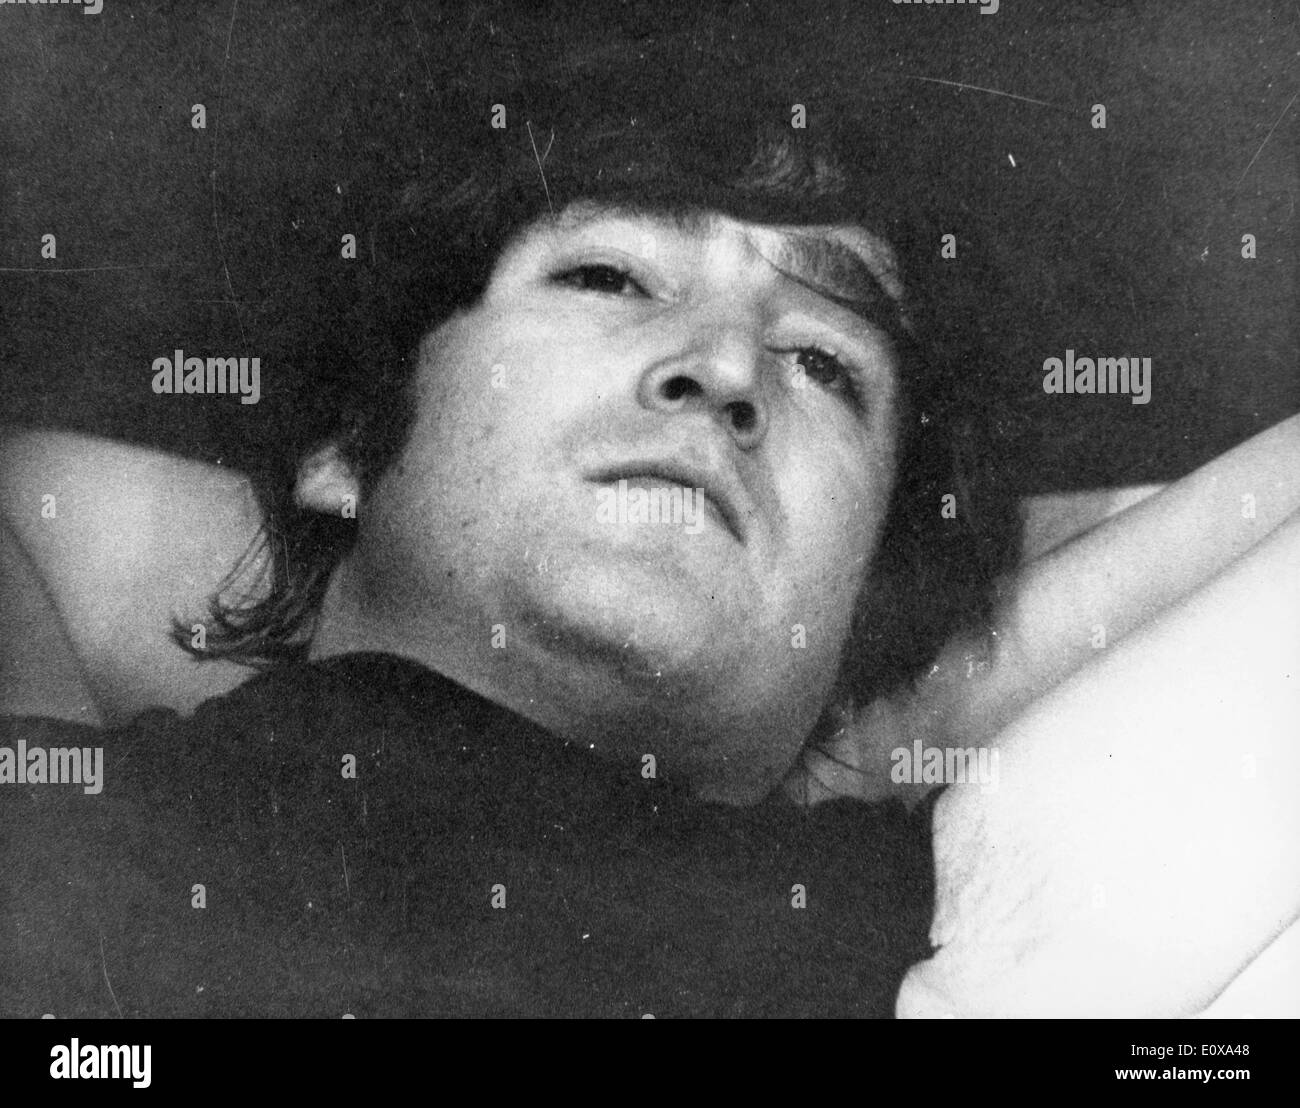 El cantante John Lennon sentando en la cama Foto de stock